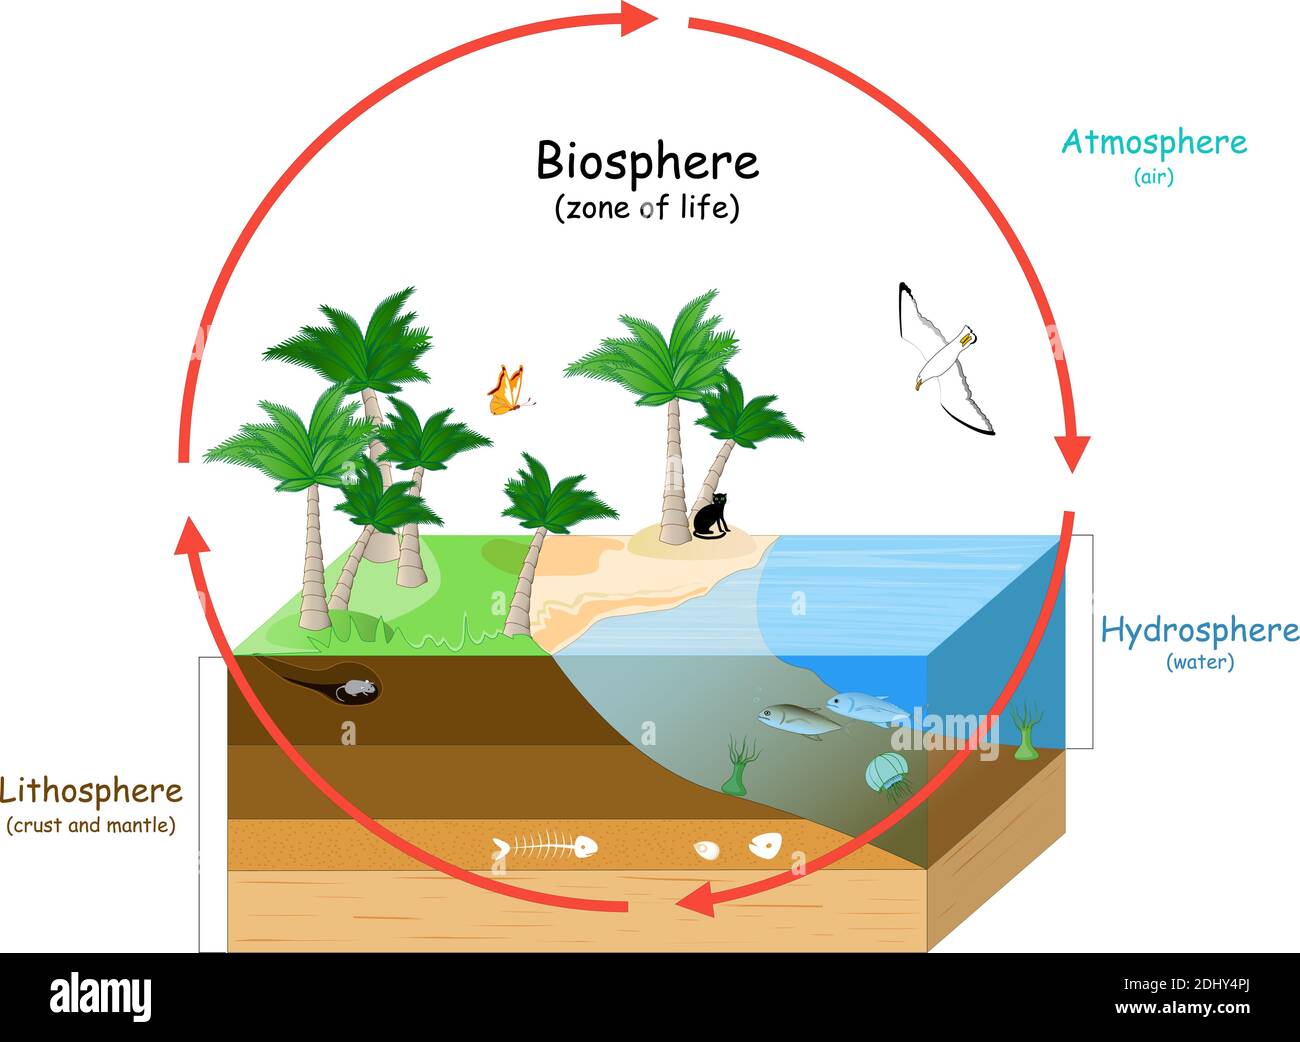 La biosphère est une zone de vie sur Terre. Les écosystèmes naturels avec la faune. Écosphère (environnement), hydrosphère (eau), atmosphère (air), lithosphère Illustration de Vecteur